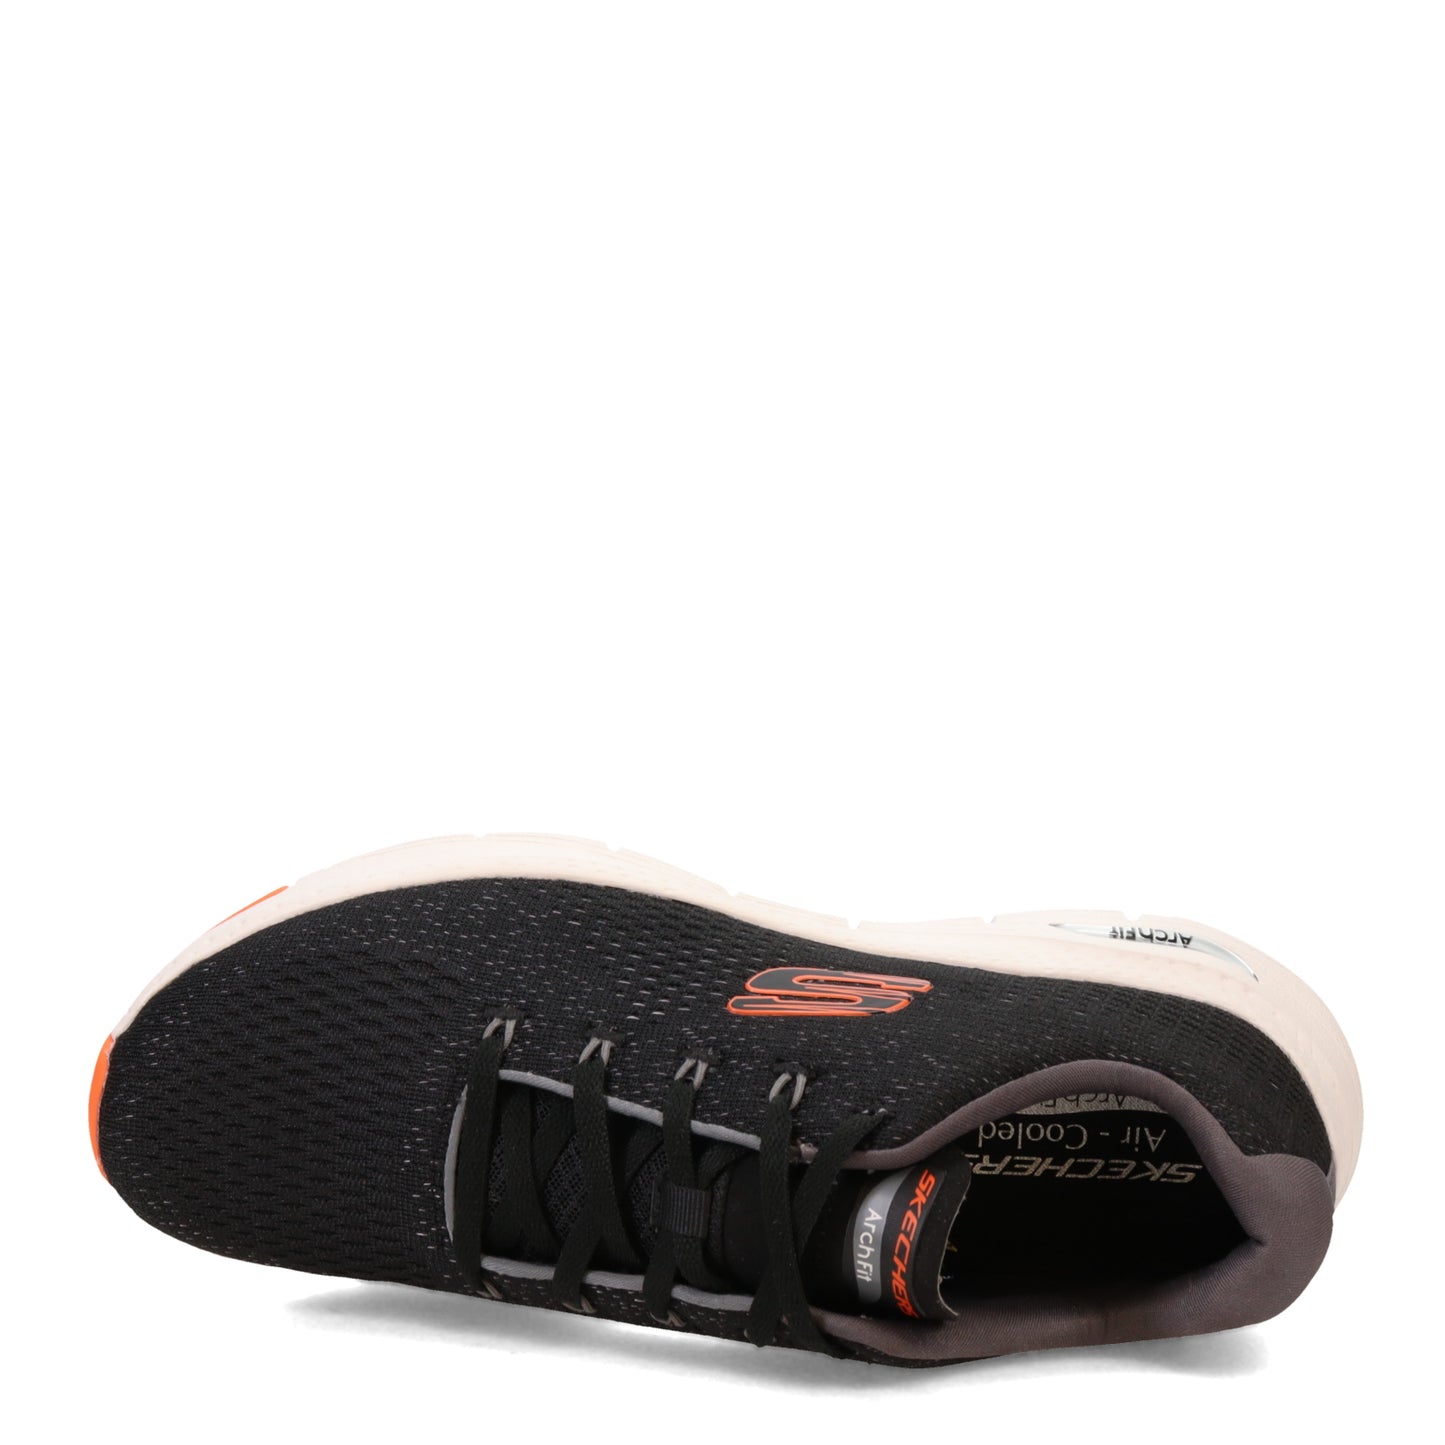 Peltz Shoes  Men's Skechers Arch Fit – Takar Sneaker Black Orange 232601-BKOR